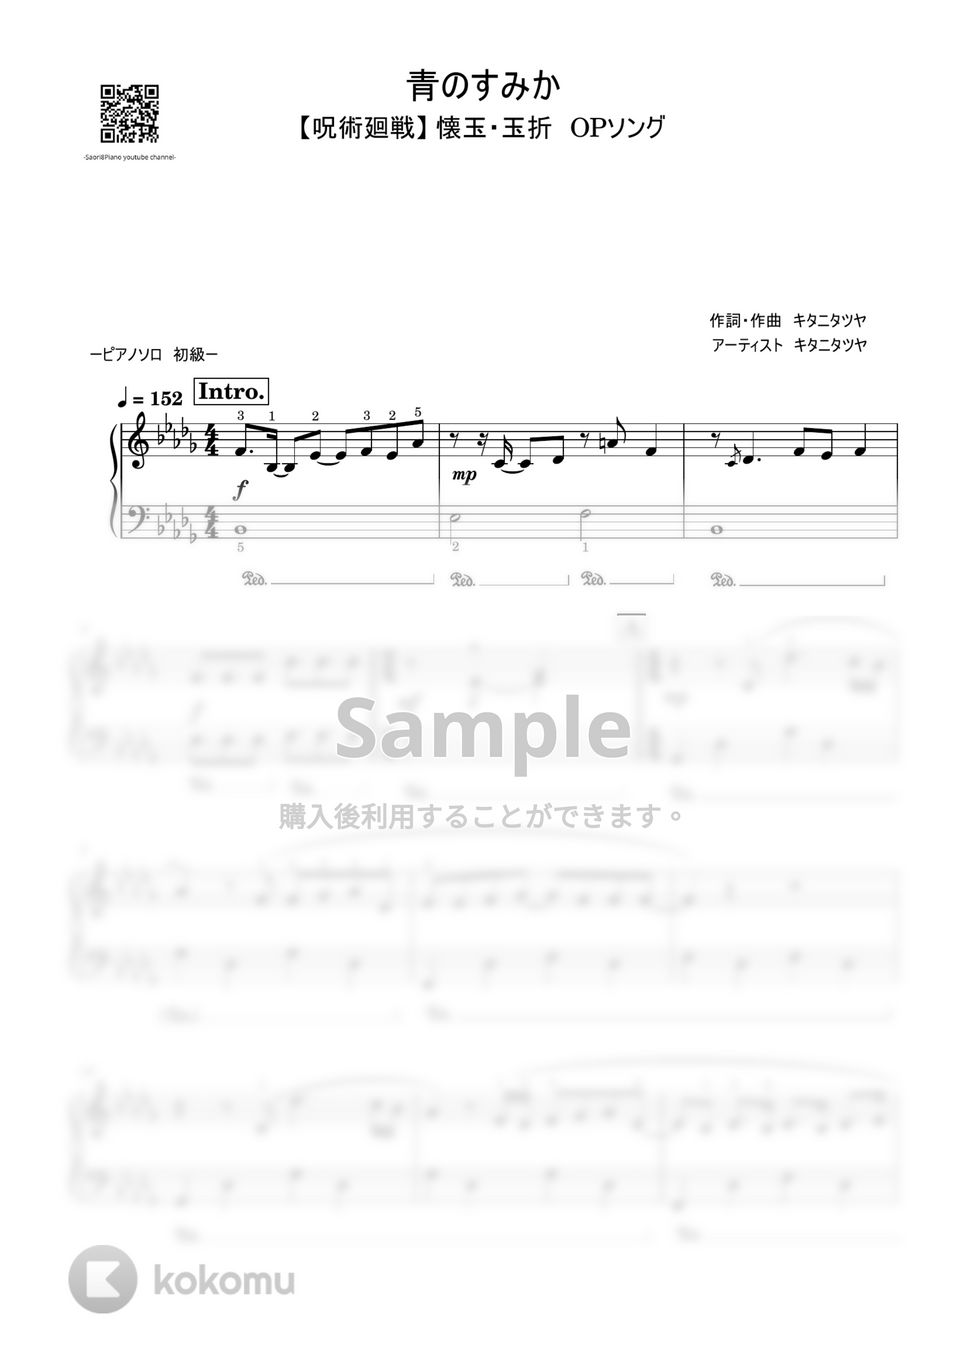 キタニタツヤ - 青のすみか (呪術廻戦『懐玉・玉折』/初級レベル) by Saori8Piano